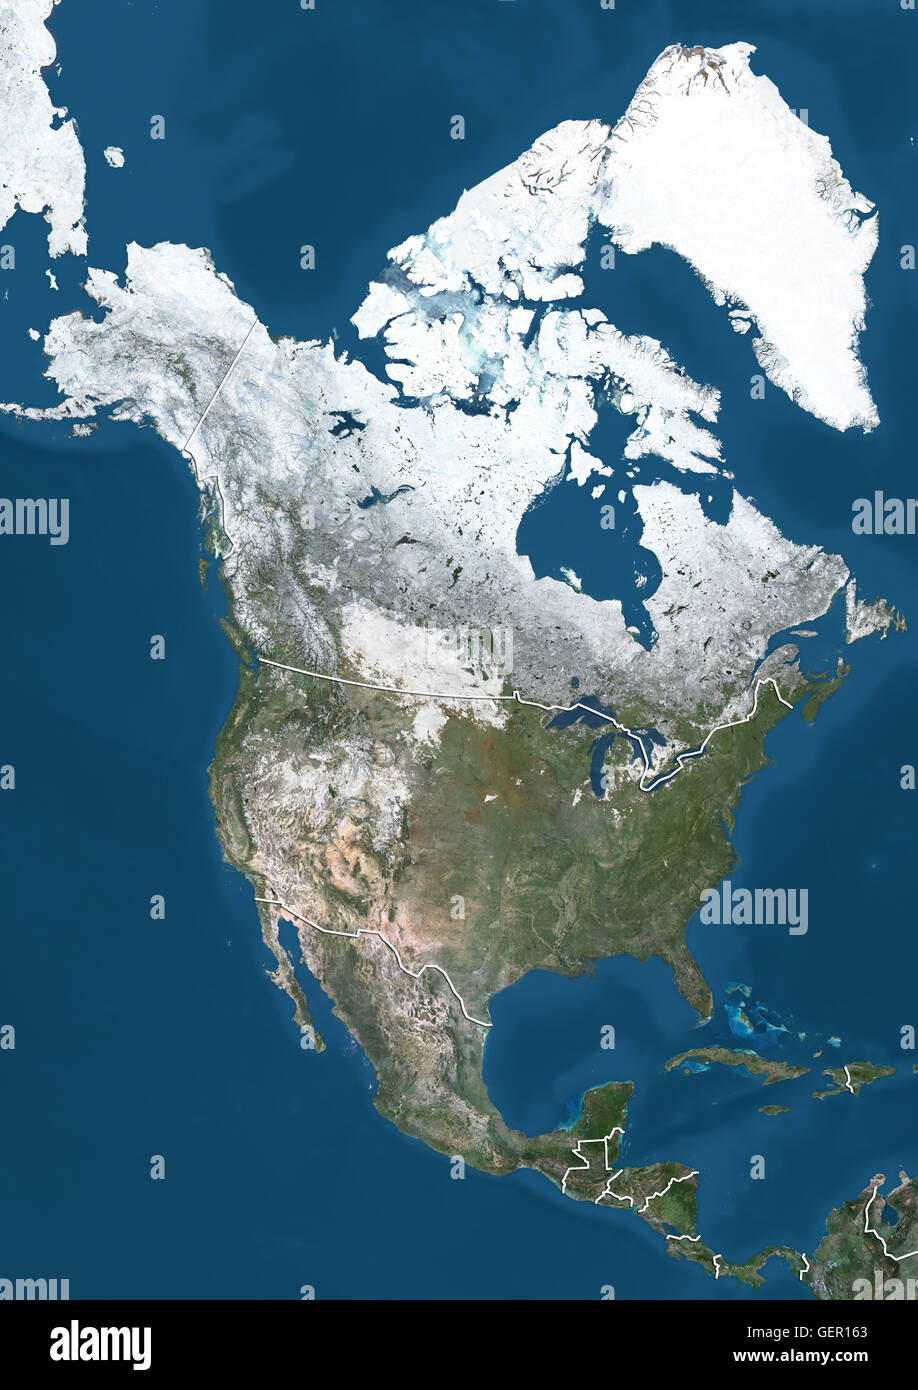 Vue Satellite de l'Amérique du Nord en hiver, avec la couverture de neige partielle (avec des frontières). Cette image a été compilé à partir de données acquises par les satellites Landsat 7 et 8. Banque D'Images